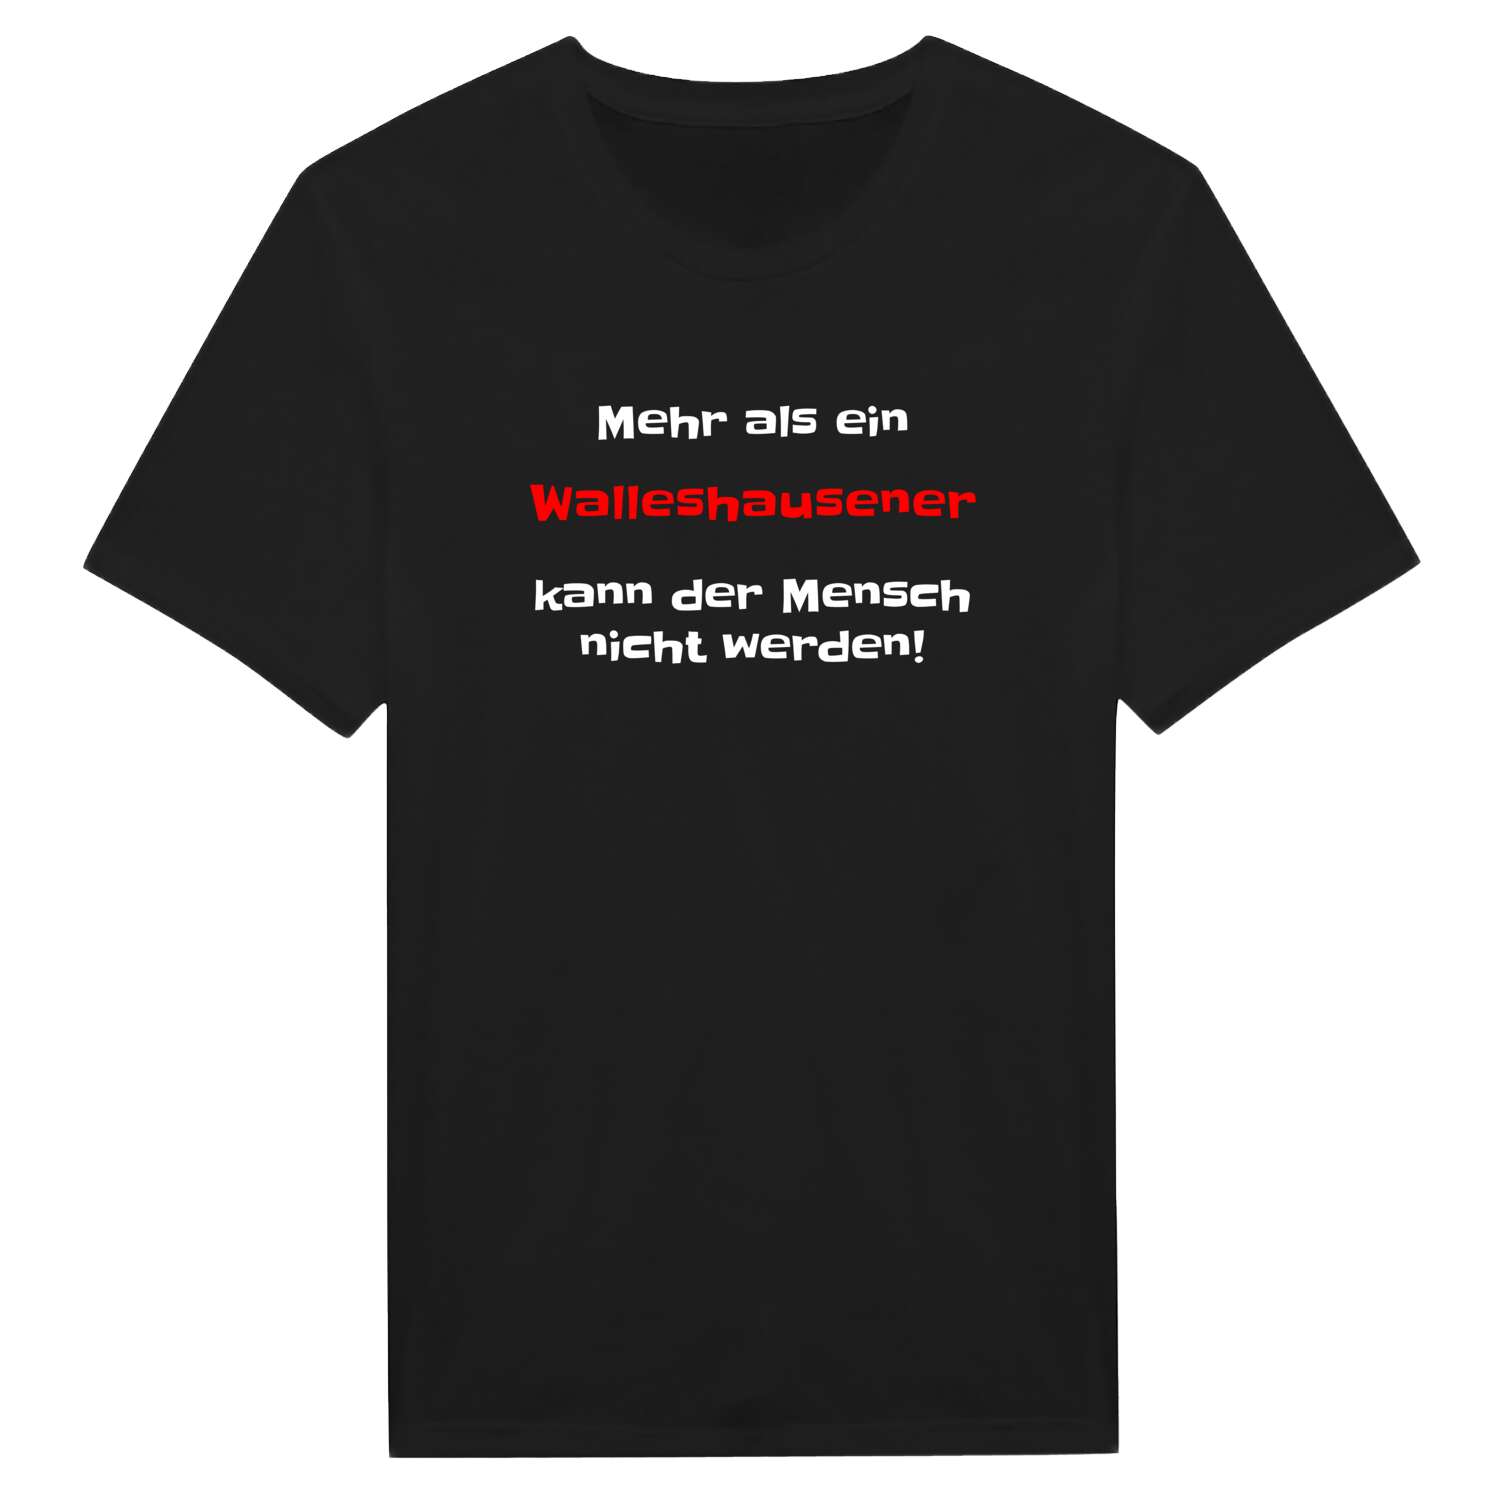 Walleshausen T-Shirt »Mehr als ein«